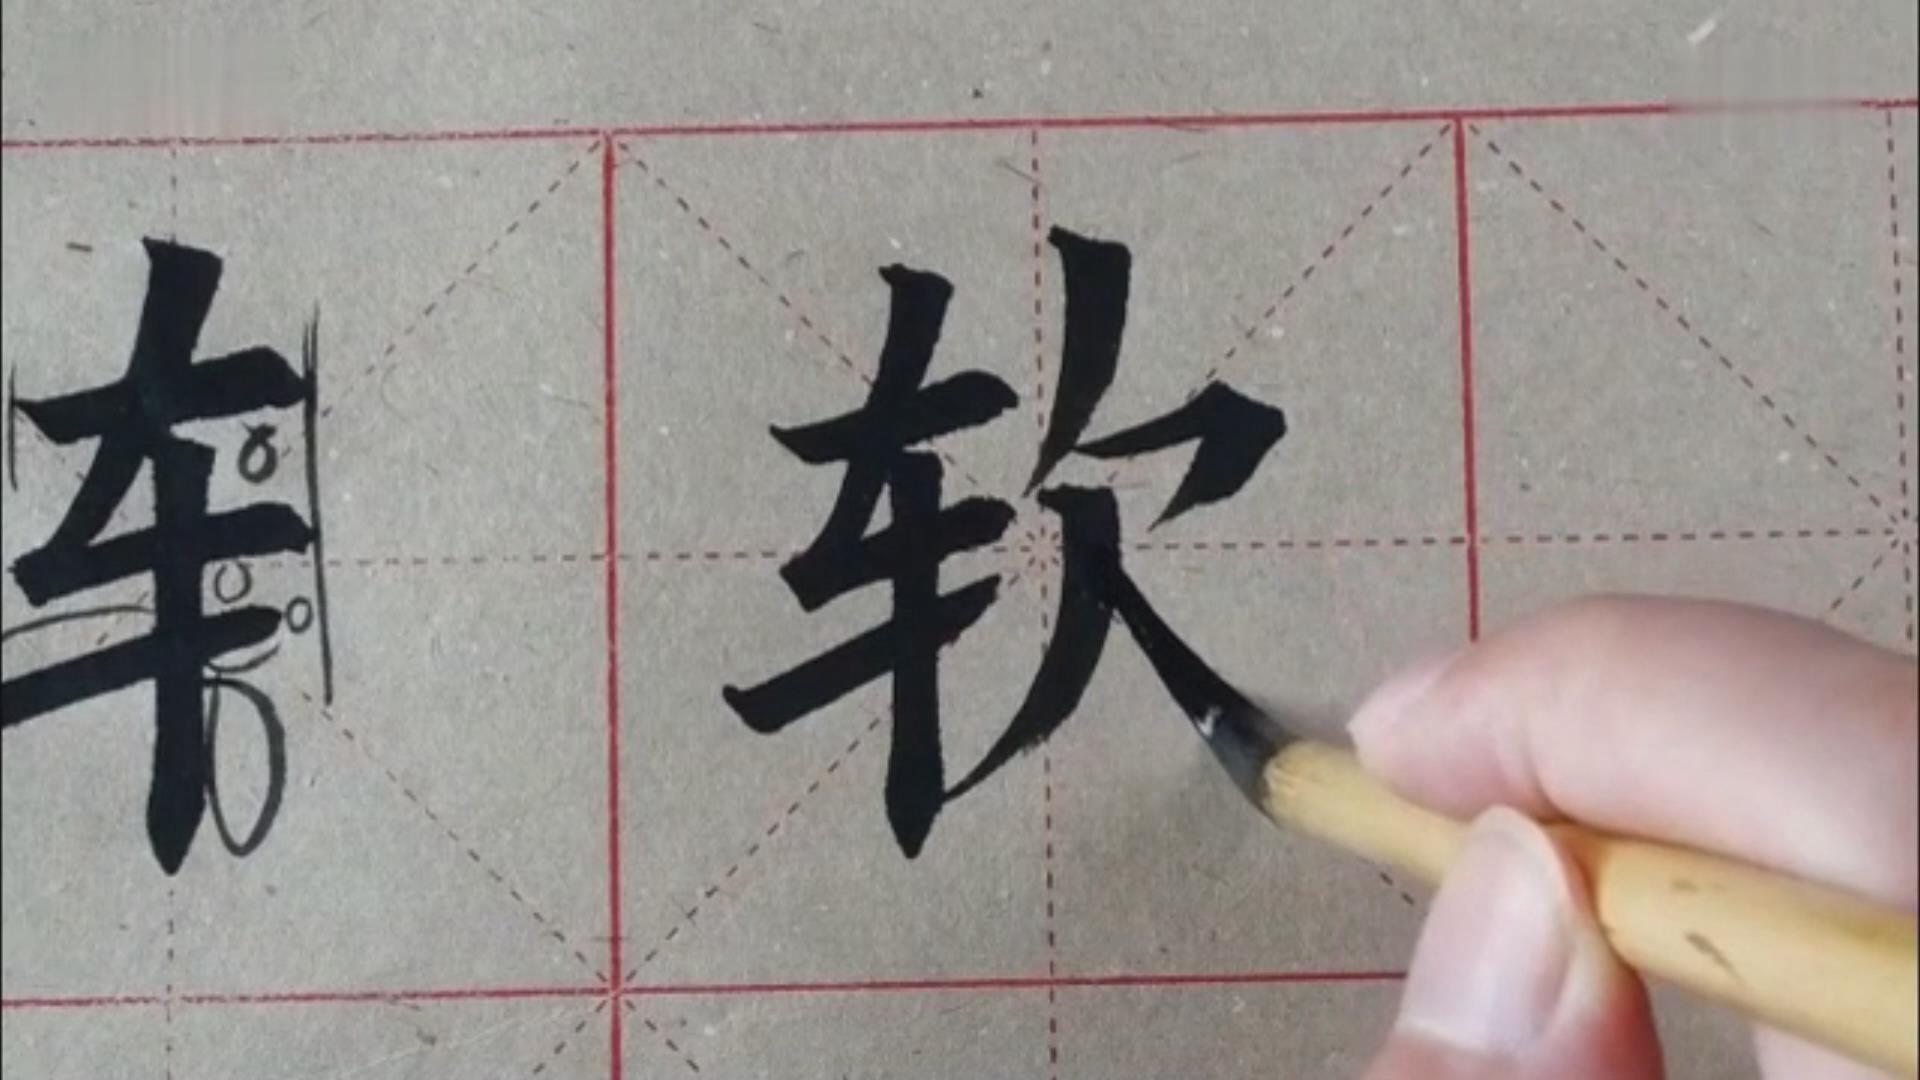 毛笔书法入门教学视频,毛笔书法练字,书法练字手法视频